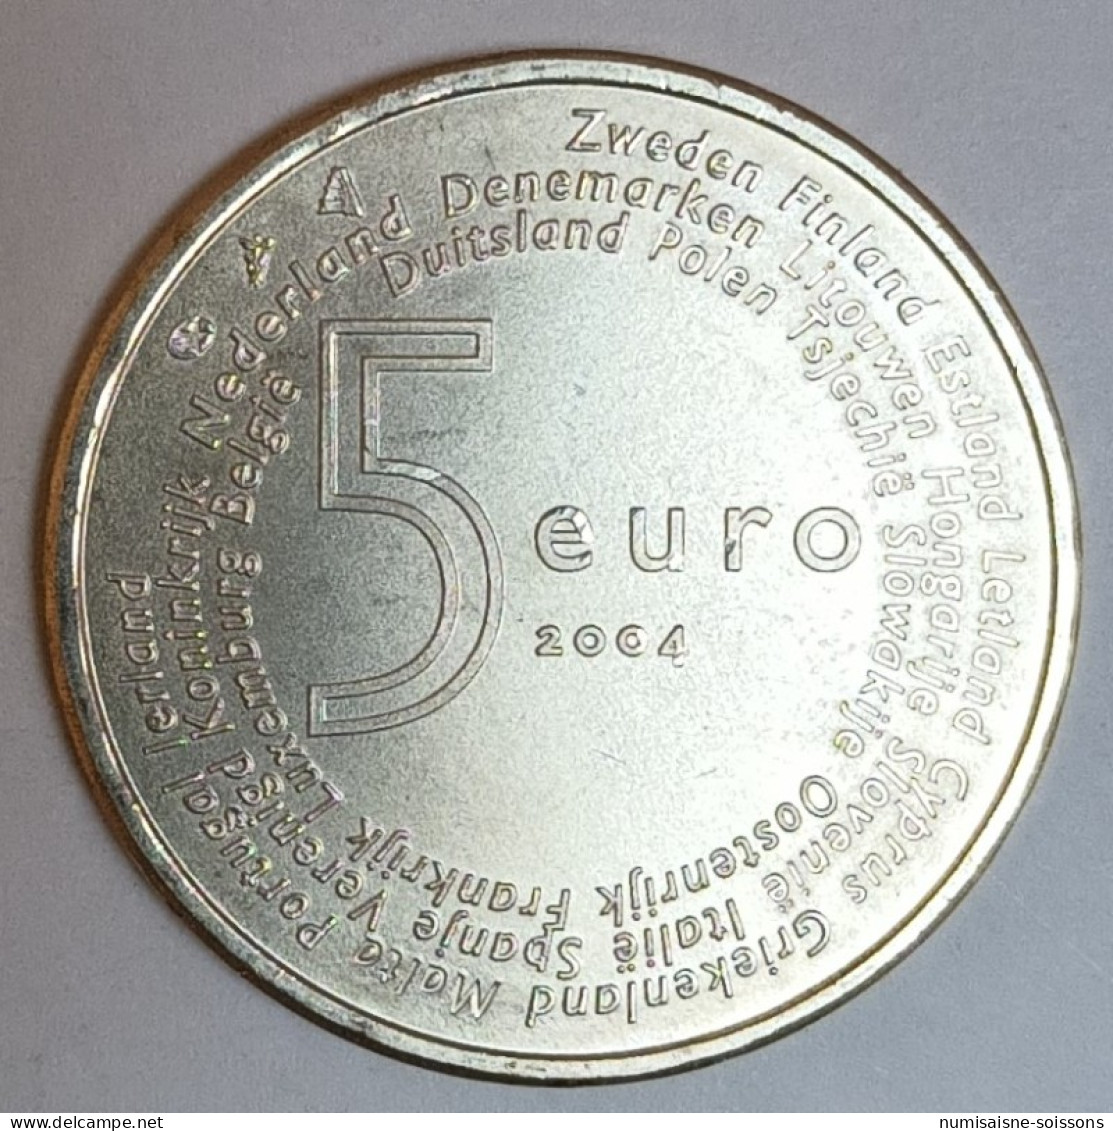 PAYS BAS - KM 252 - 5 EURO 2004 - ELARGISSEMENT DE L'UNION EUROPEENNE - ARGENT - SPL - Paesi Bassi